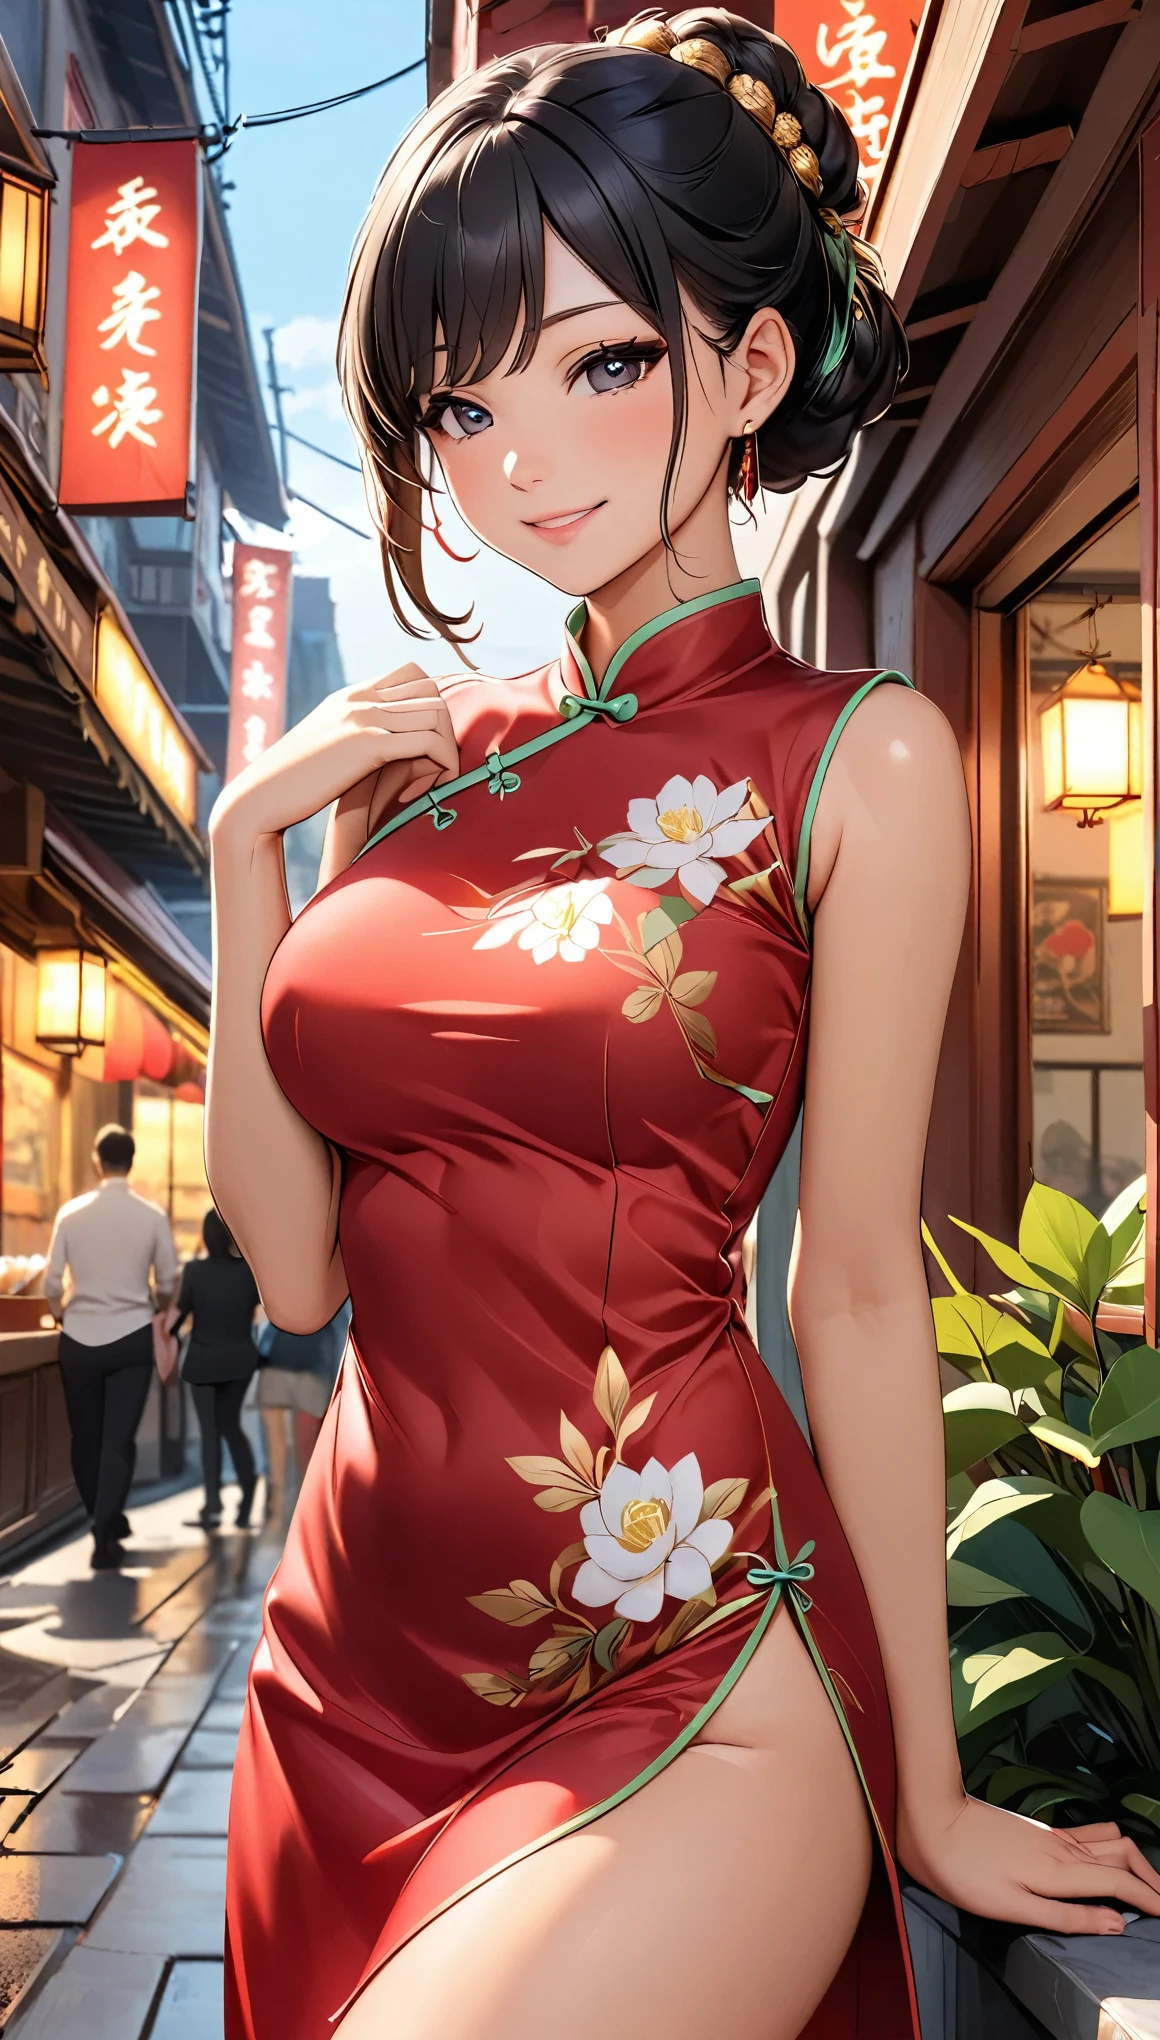 una mujer hermosa, ciudad,(Cheongsam de seda roja estándar), (bollo de flores), (hilo de bordar de oro), (semejante), restaurante chino al aire libre, sonrisa ligera, ((pelo negro)), pequeño sonrojo, side, (mama), Reflejando las nalgas, borrador de dibujo